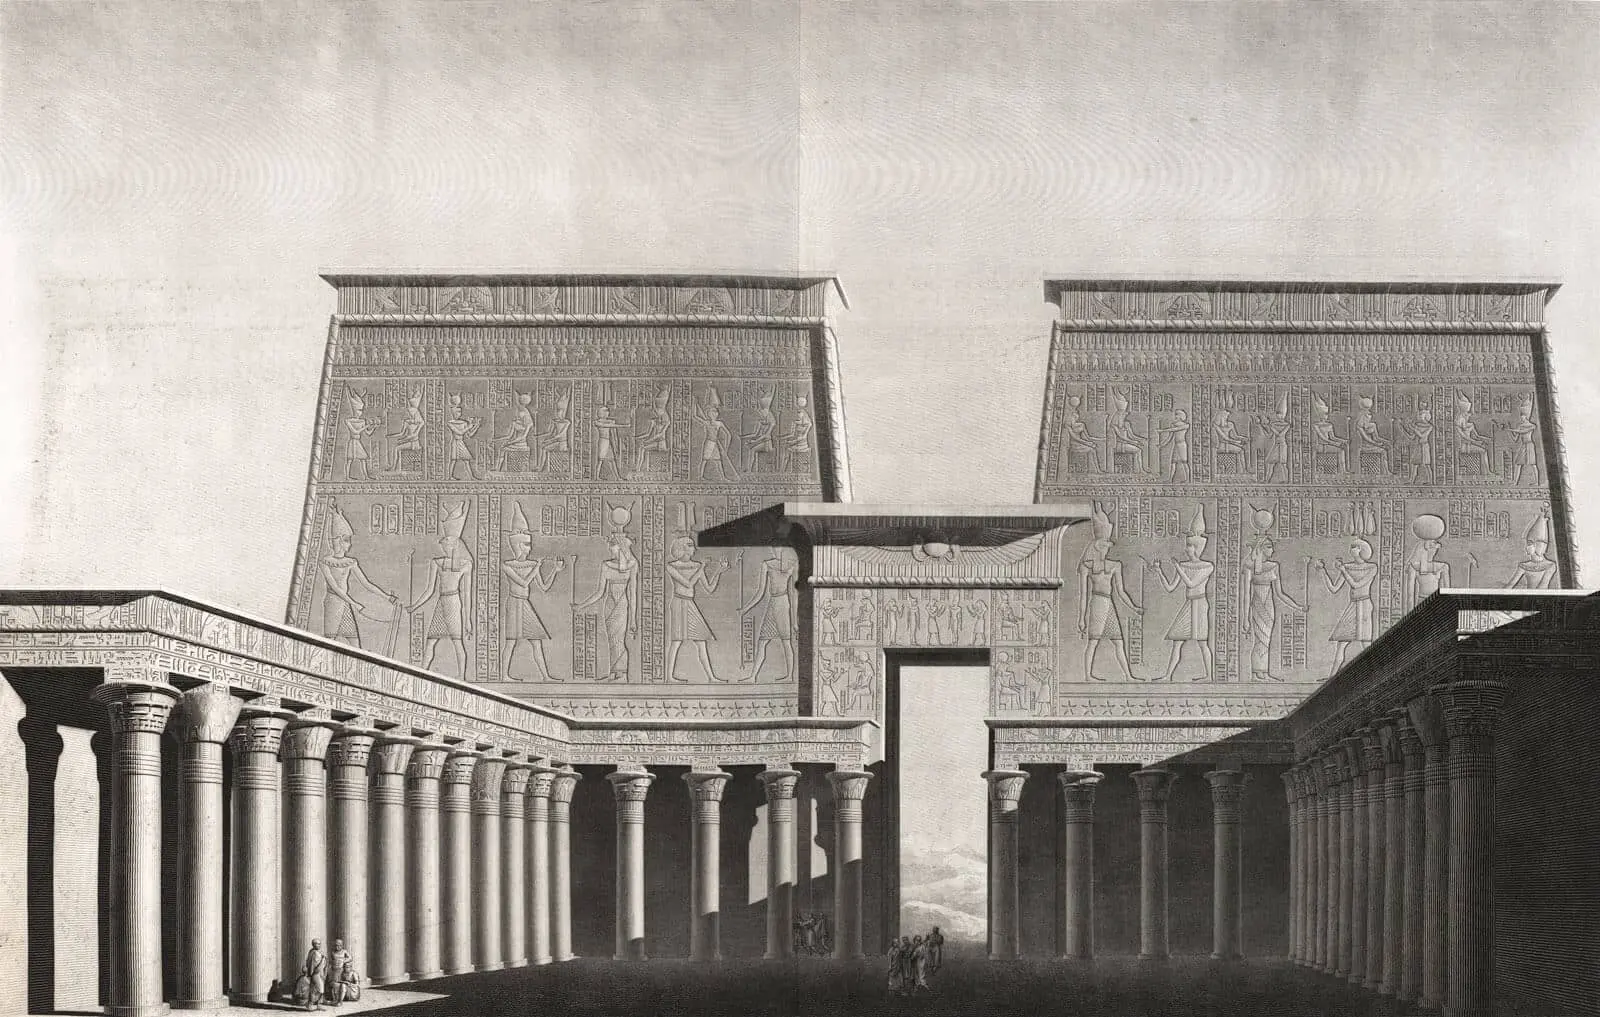 Edfu temple from La Description de l'Egypte Joseph Fourier Grenoble